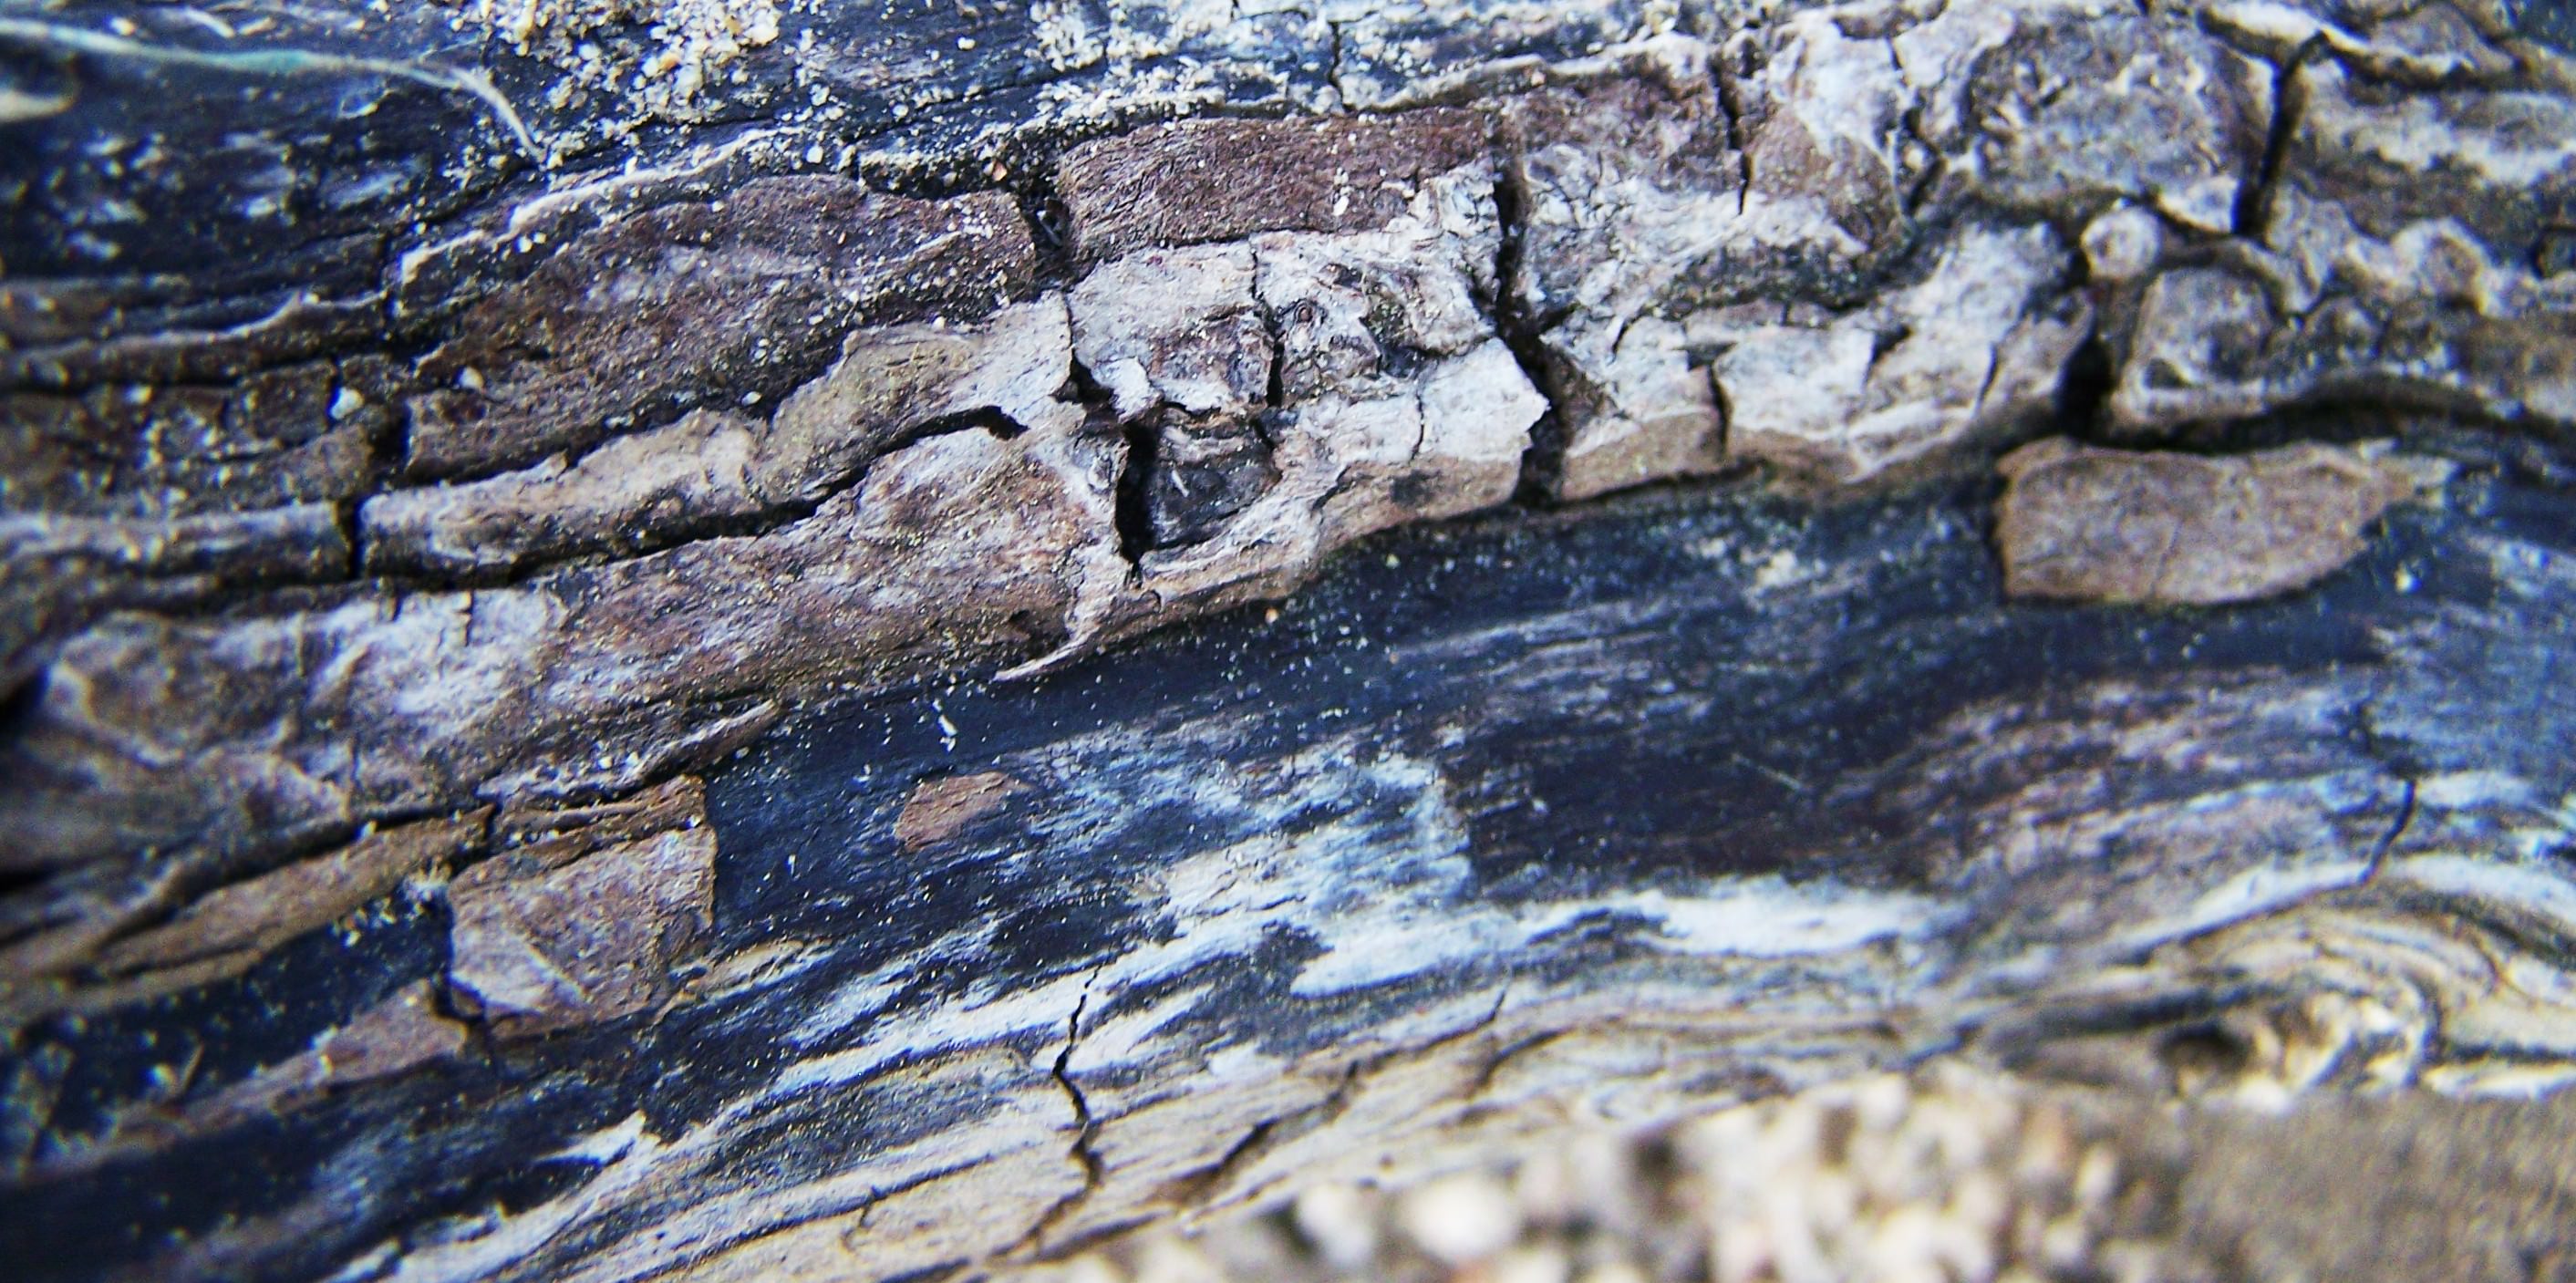 Burnt log - Album on Imgur